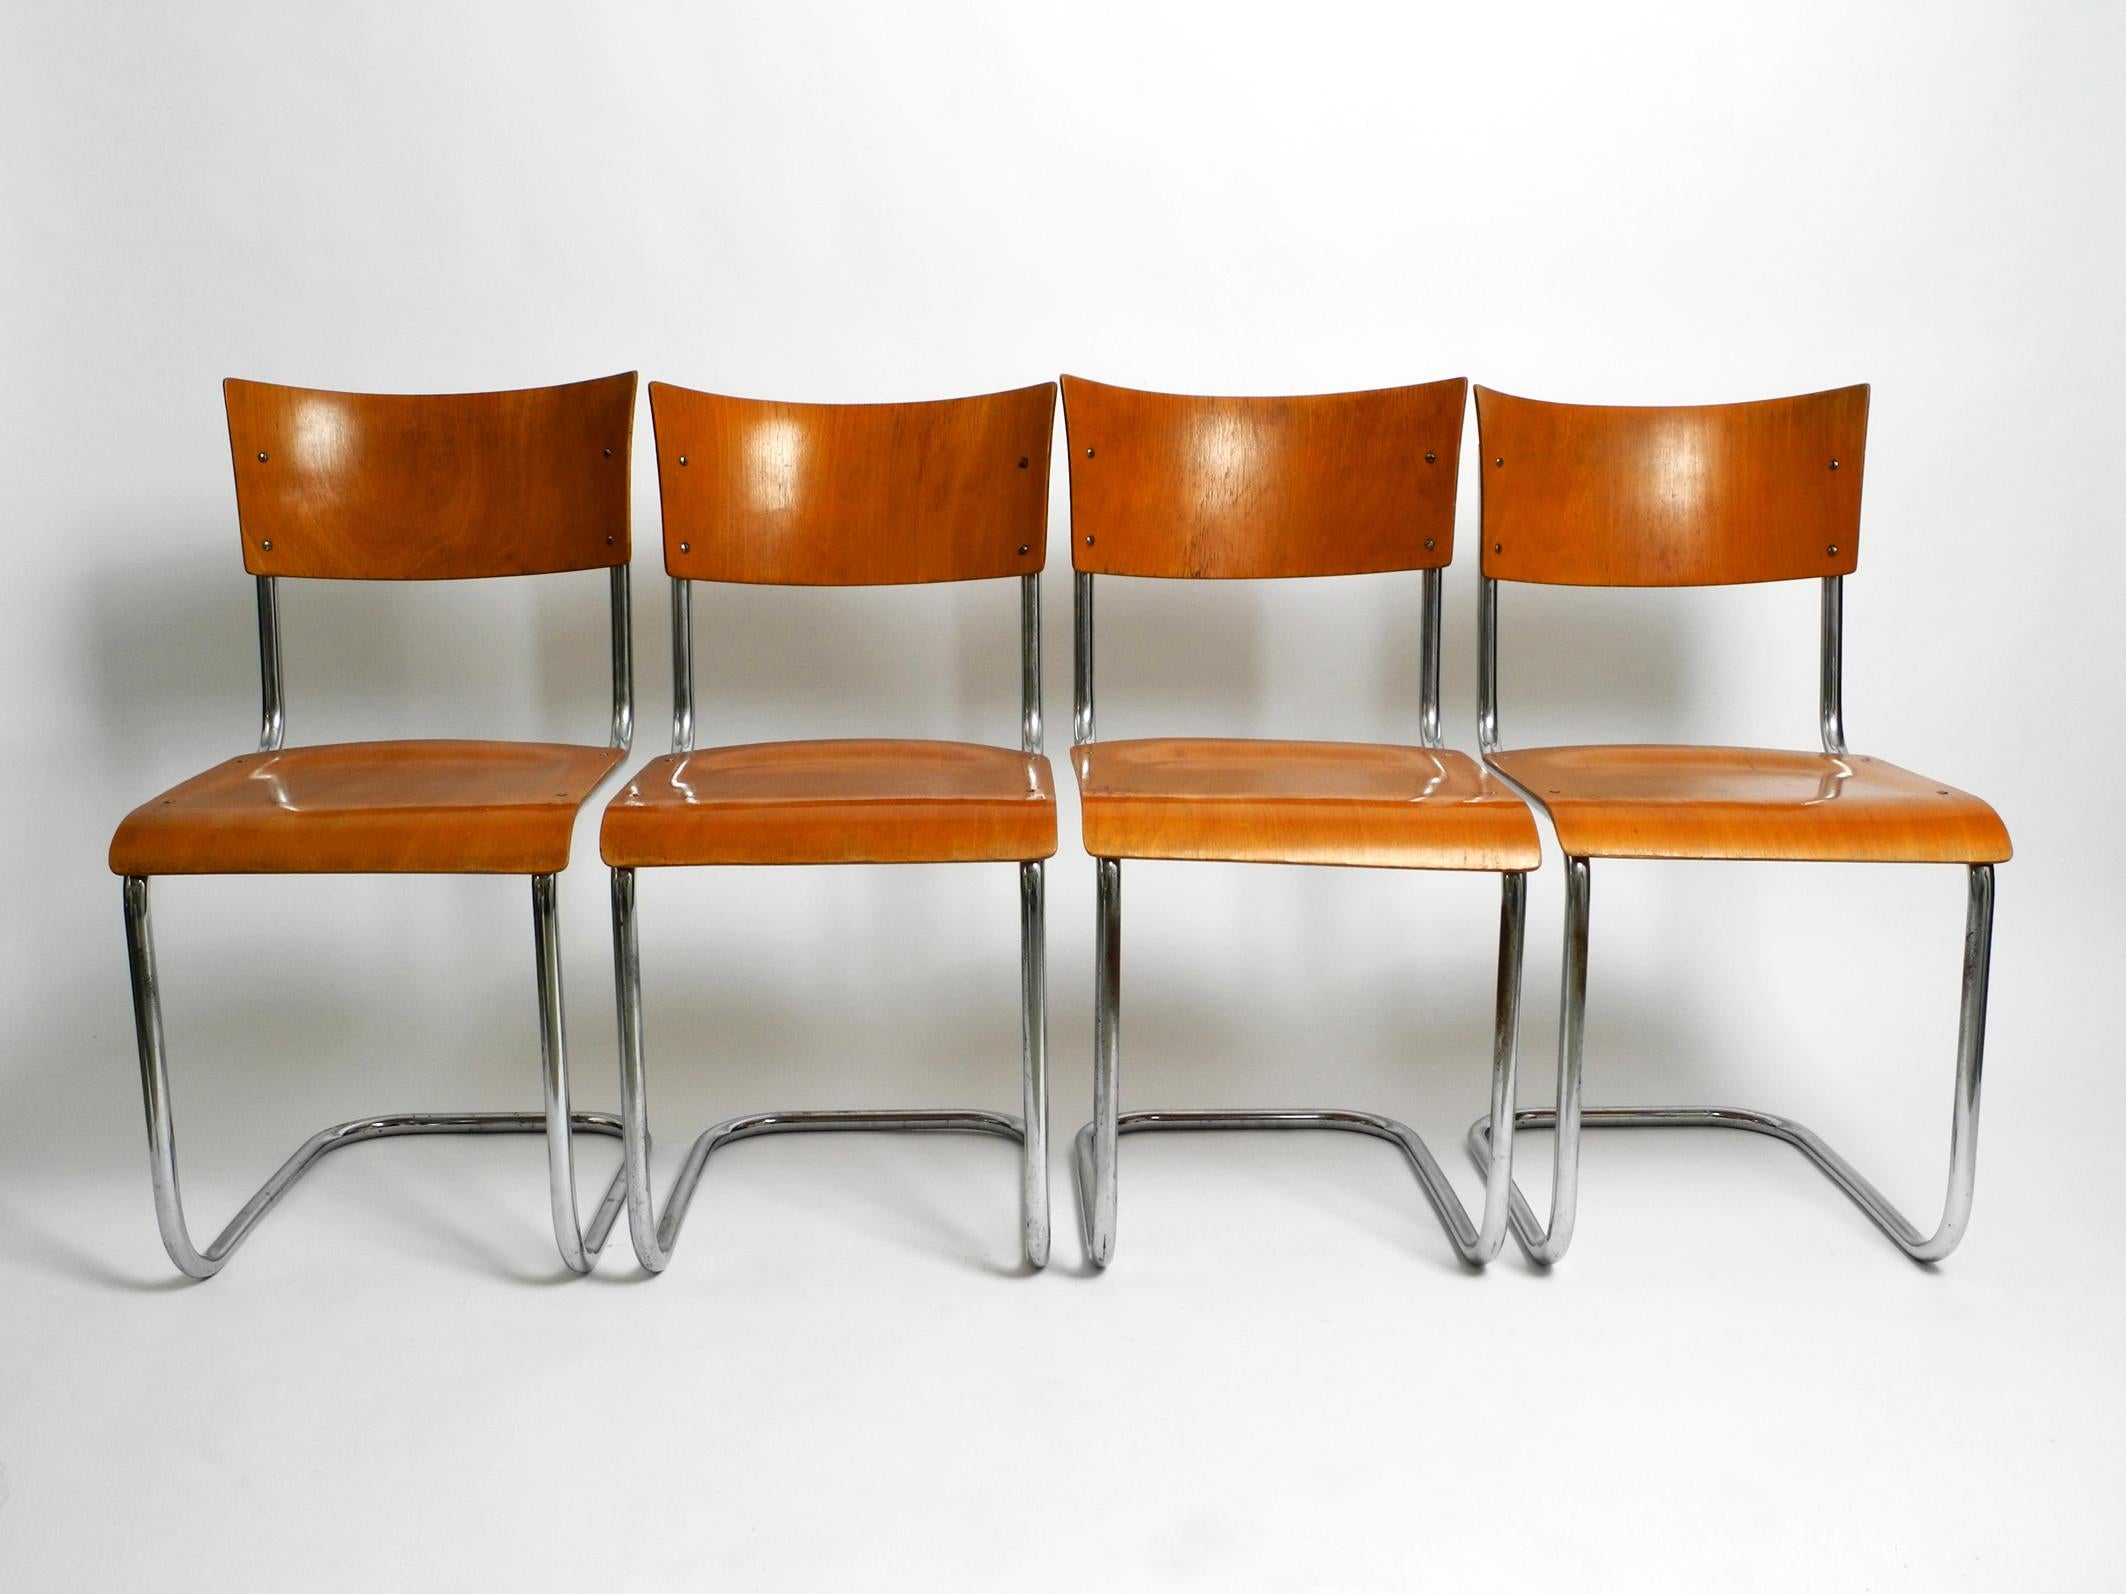 Quatre chaises Bauhaus en acier tubulaire en porte-à-faux datant des années 1930.
Conception par le célèbre architecte néerlandais Mart Stam.
Le fabricant est l'usine de meubles Robert Slezak. Fabriqué en République tchèque.
L'assise et le dossier